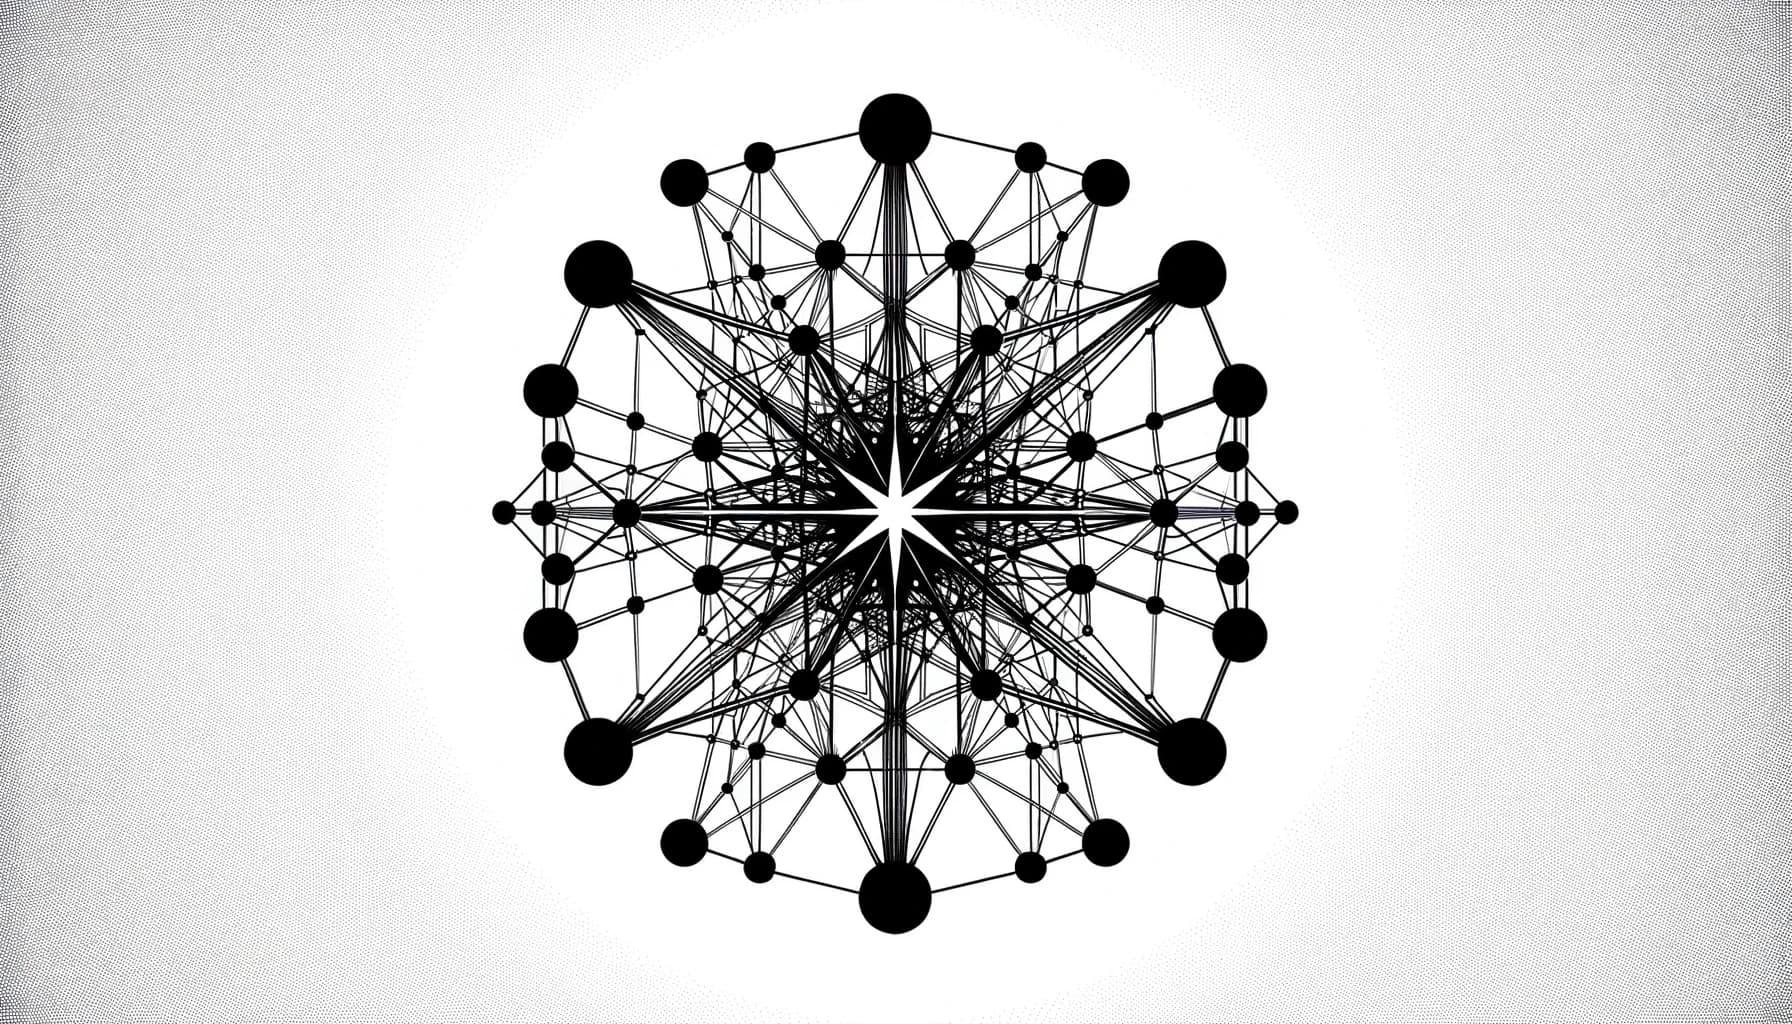 Abstrakte Darstellung von Hyperlinks als Netzwerk aus Kugeln und Verbindungen